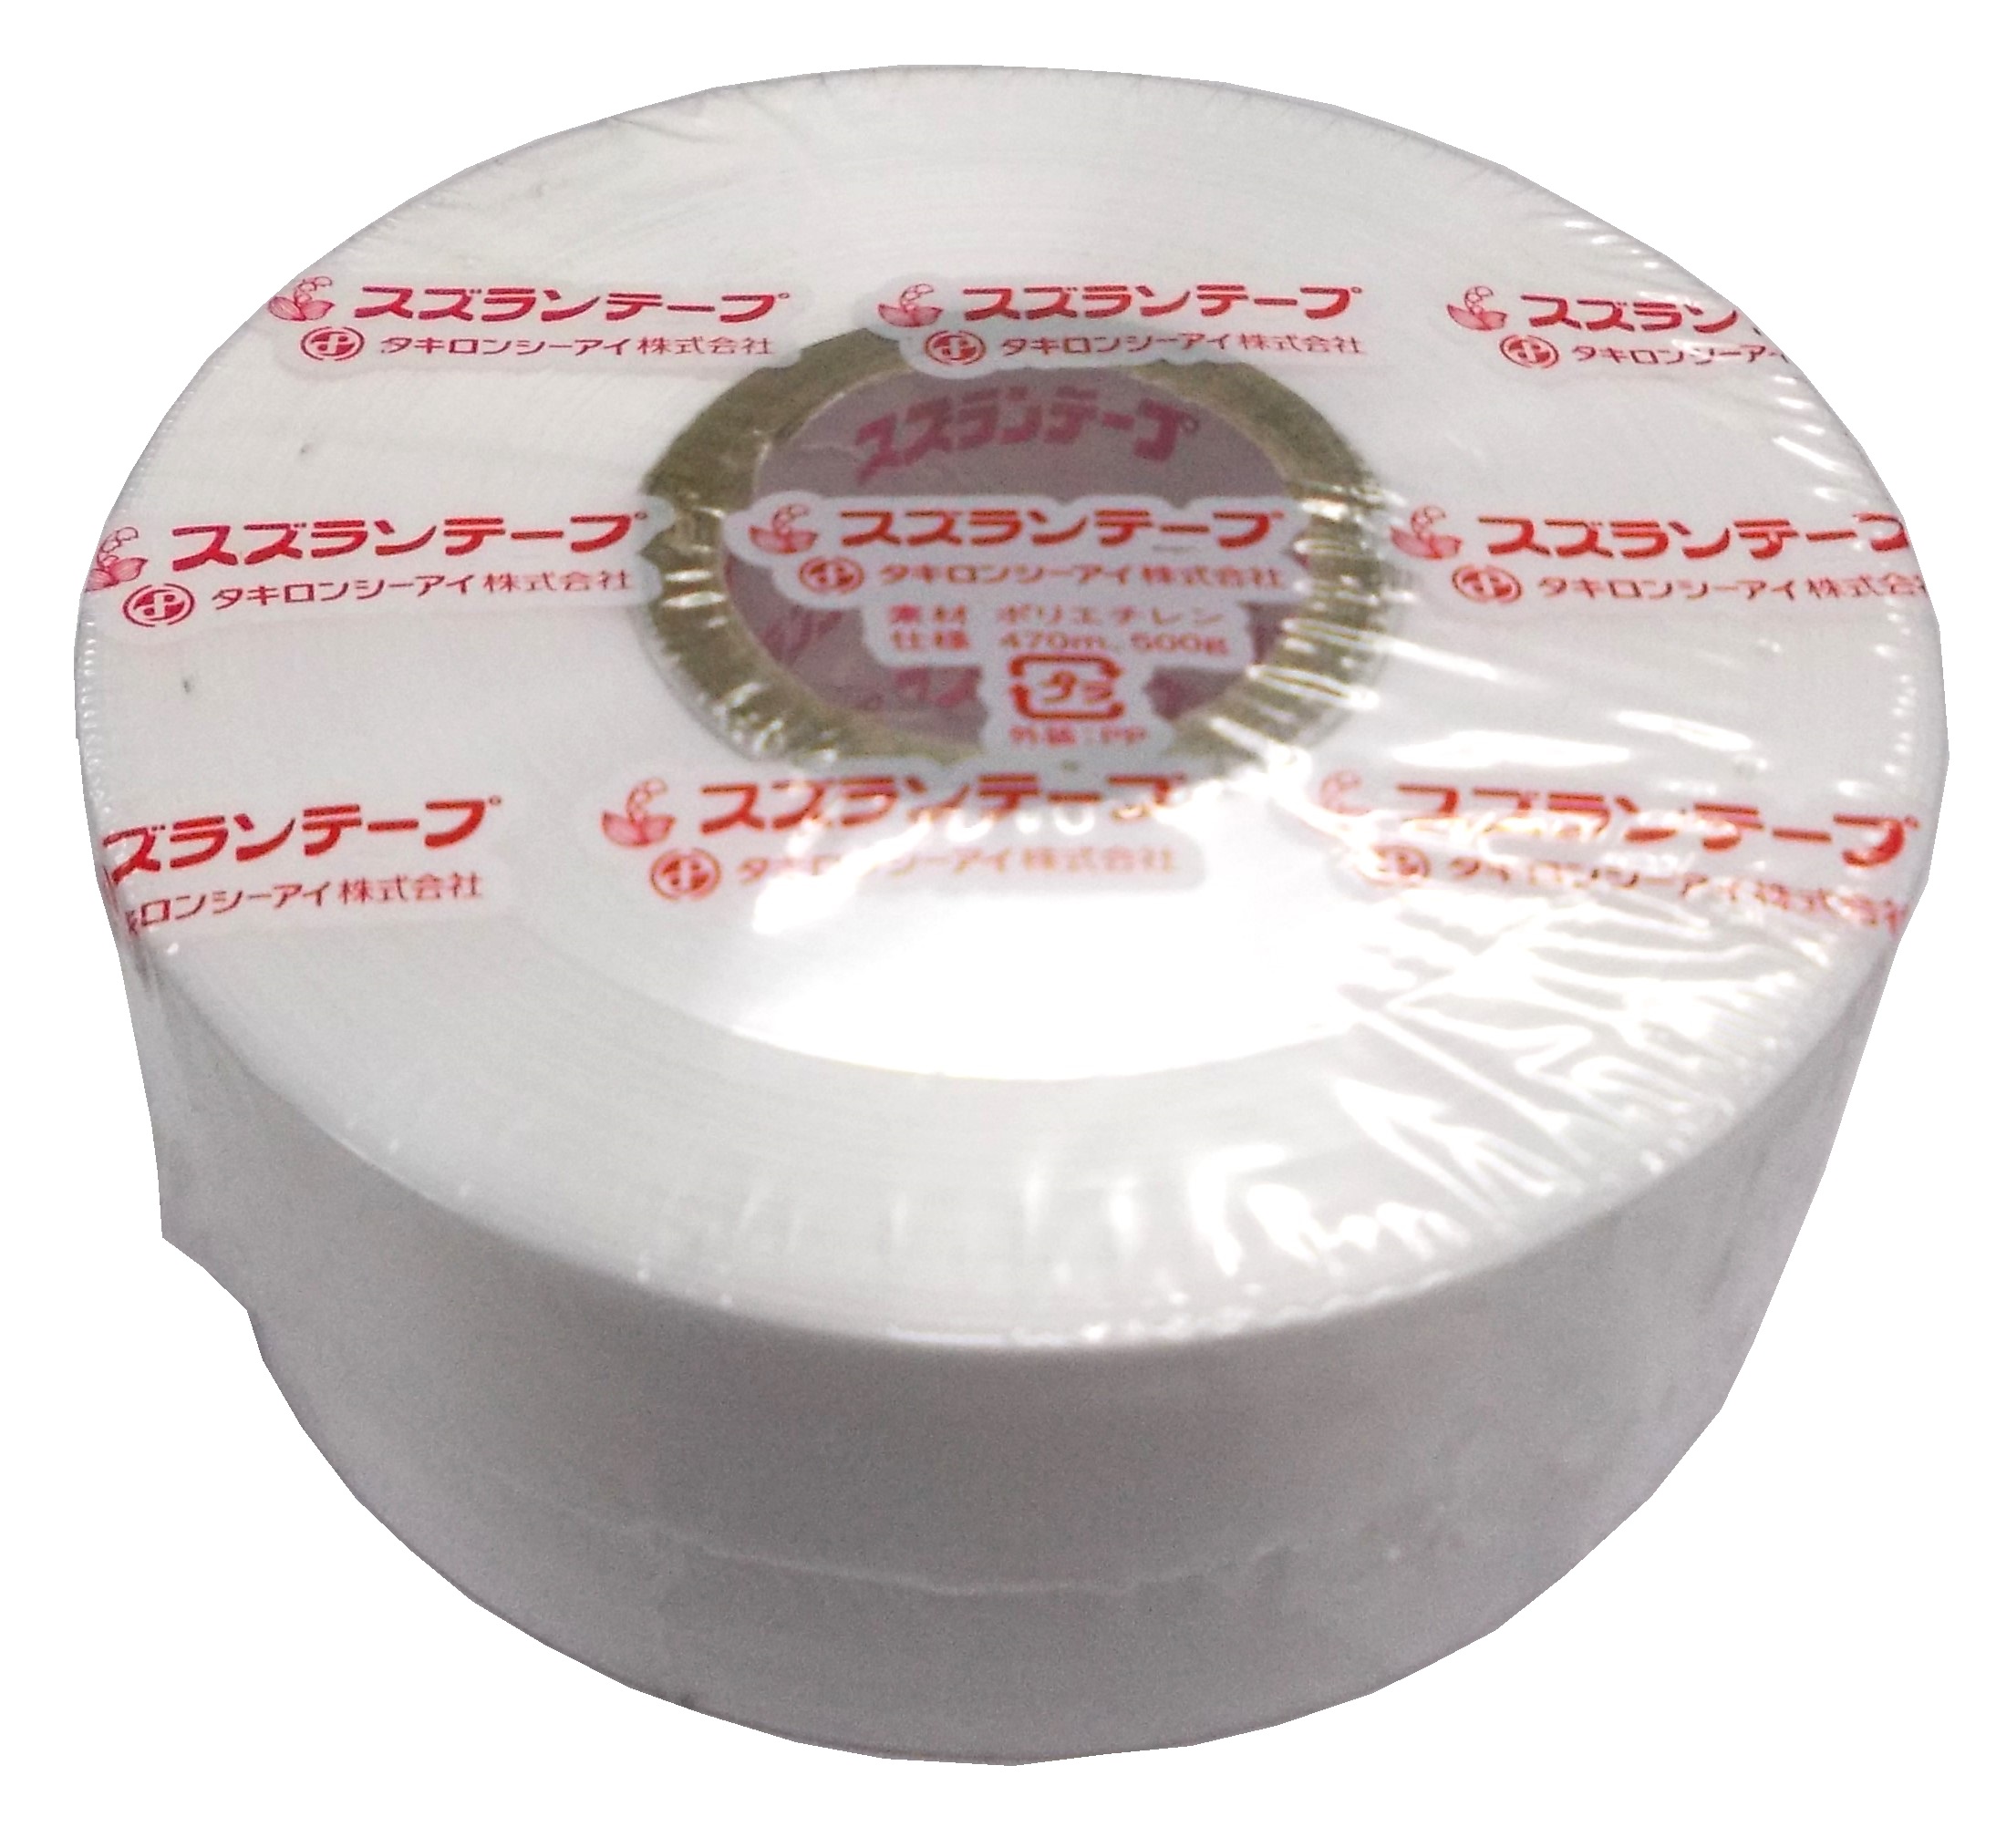 タキロンシーアイ化成 スズランテープ 50mm×470m 緑 24202012 ＰＰひも 輪ゴム ロープ 梱包資材